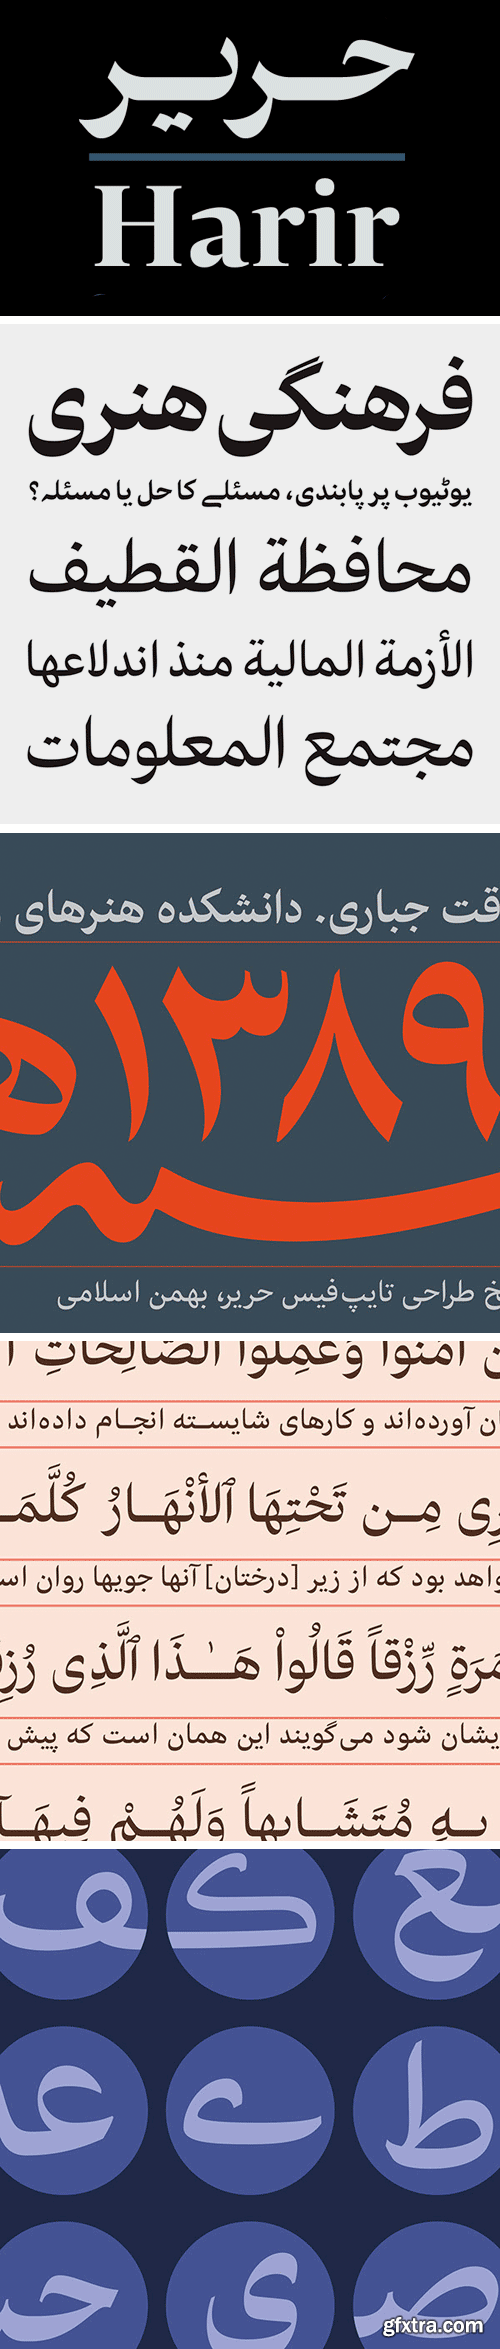 Harir Arabic Typeface